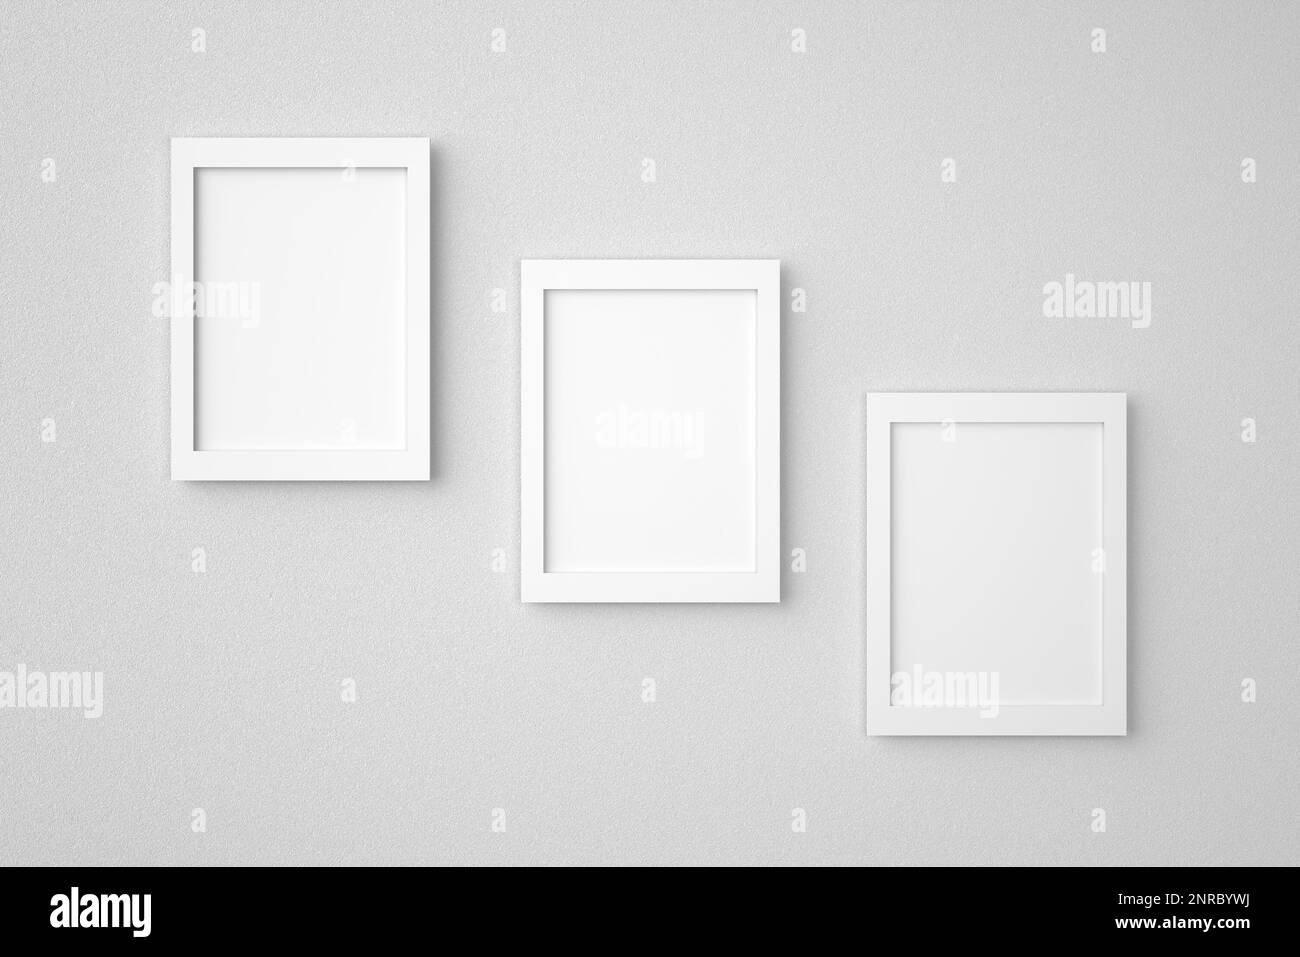 Trois cadres d'image rectangulaires vierges ou vides suspendus sur un mur blanc. Image d'arrière-plan de maquette. 3D rendu. Banque D'Images